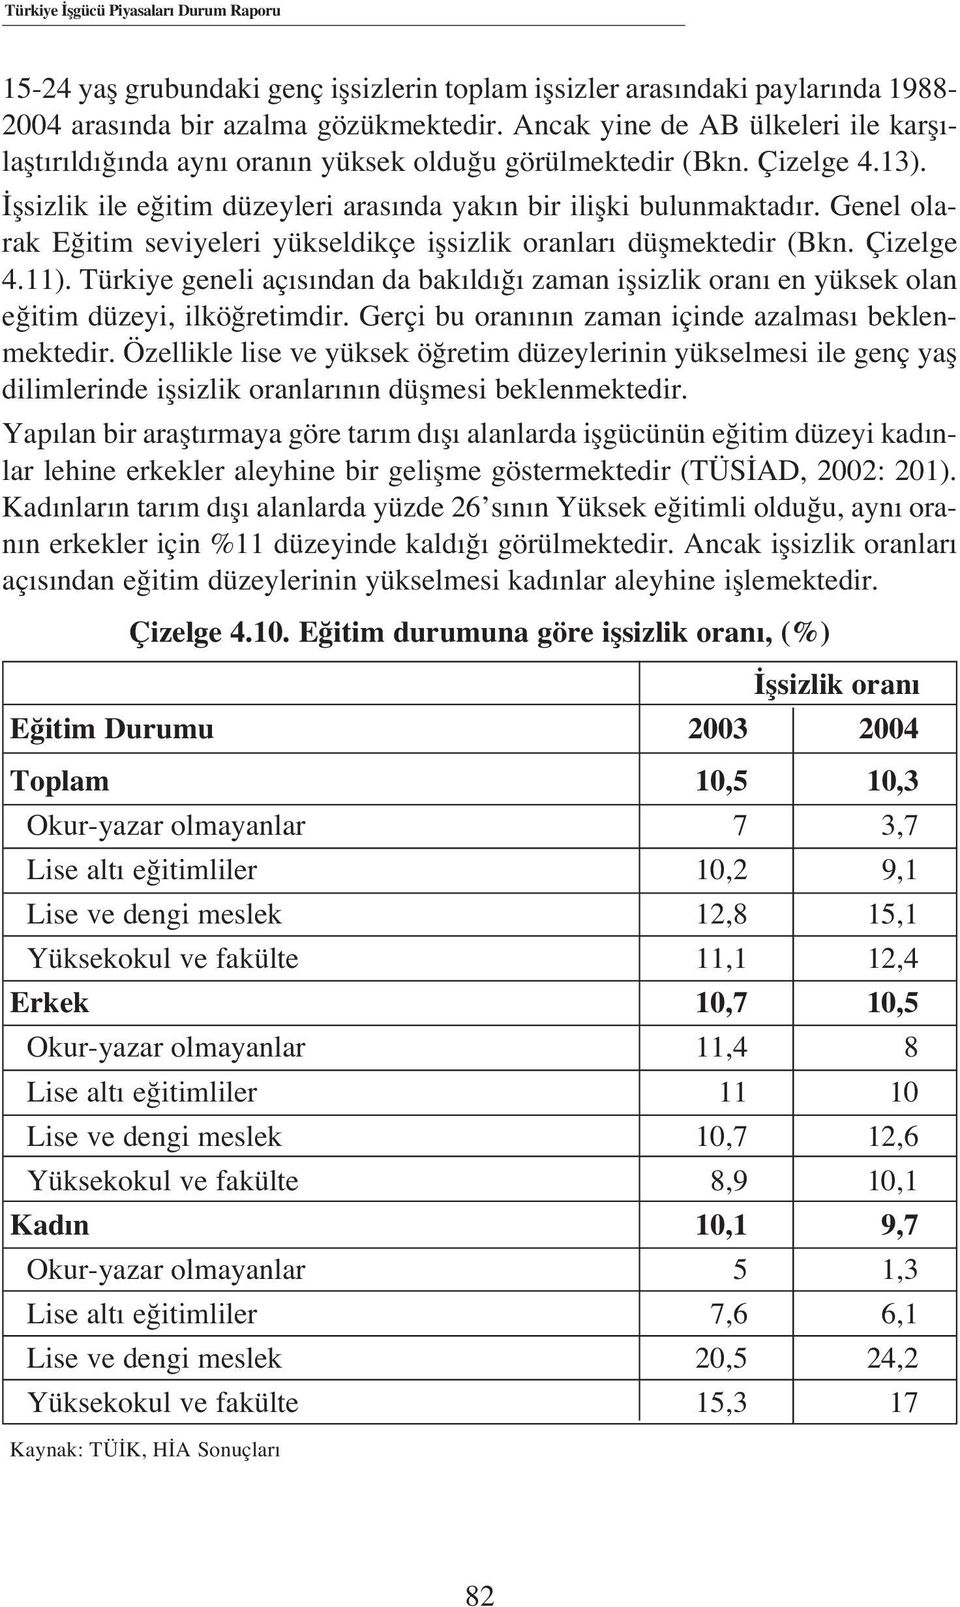 Genel olarak E itim seviyeleri yükseldikçe iflsizlik oranlar düflmektedir (Bkn. Çizelge 4.11). Türkiye geneli aç s ndan da bak ld zaman iflsizlik oran en yüksek olan e itim düzeyi, ilkö retimdir.